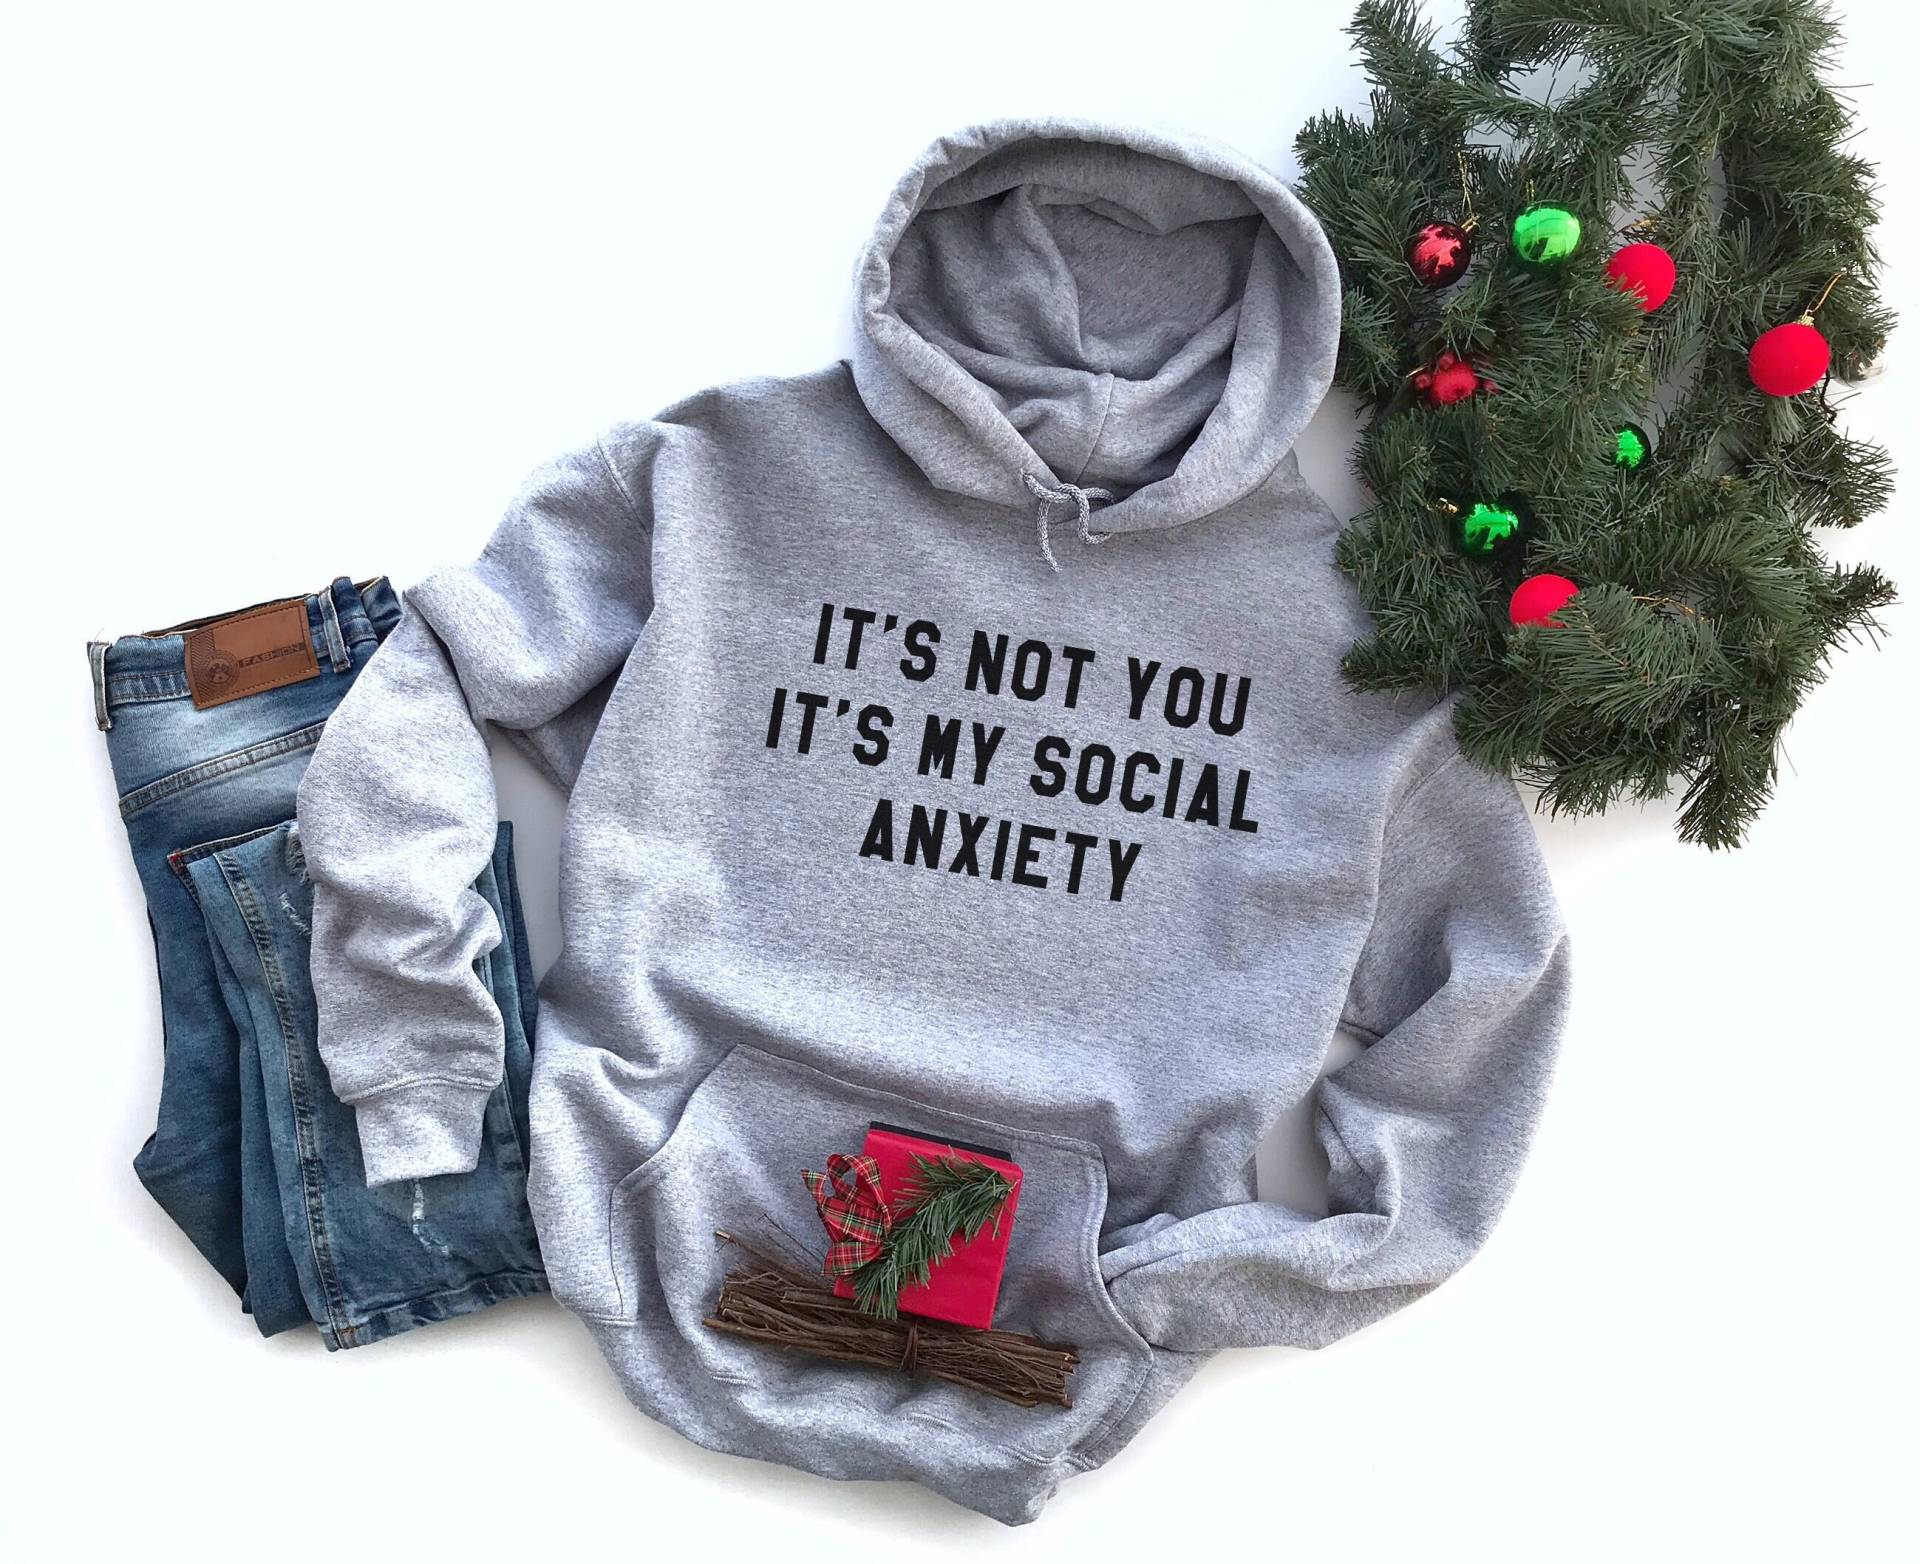 Es Ist Meine Soziale Angst Pullover Hoodies Sweatshirt Für Frauen Mit Lustigen Zitaten Neuheit Geschenk Sie von LoveMeLoveMyShirts